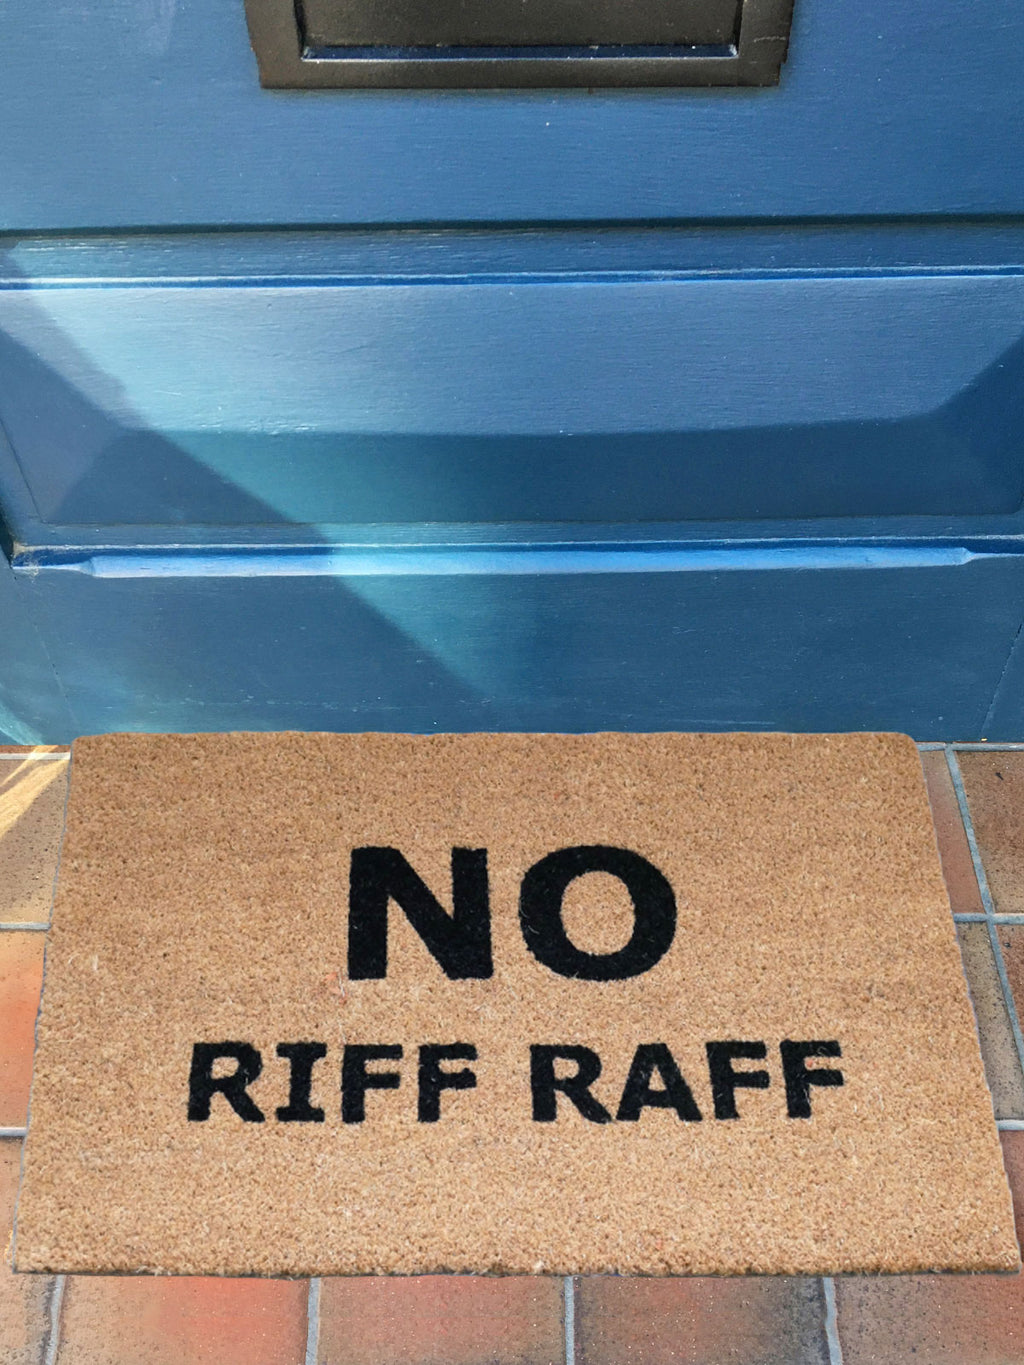 No Riff Raff Door Mat